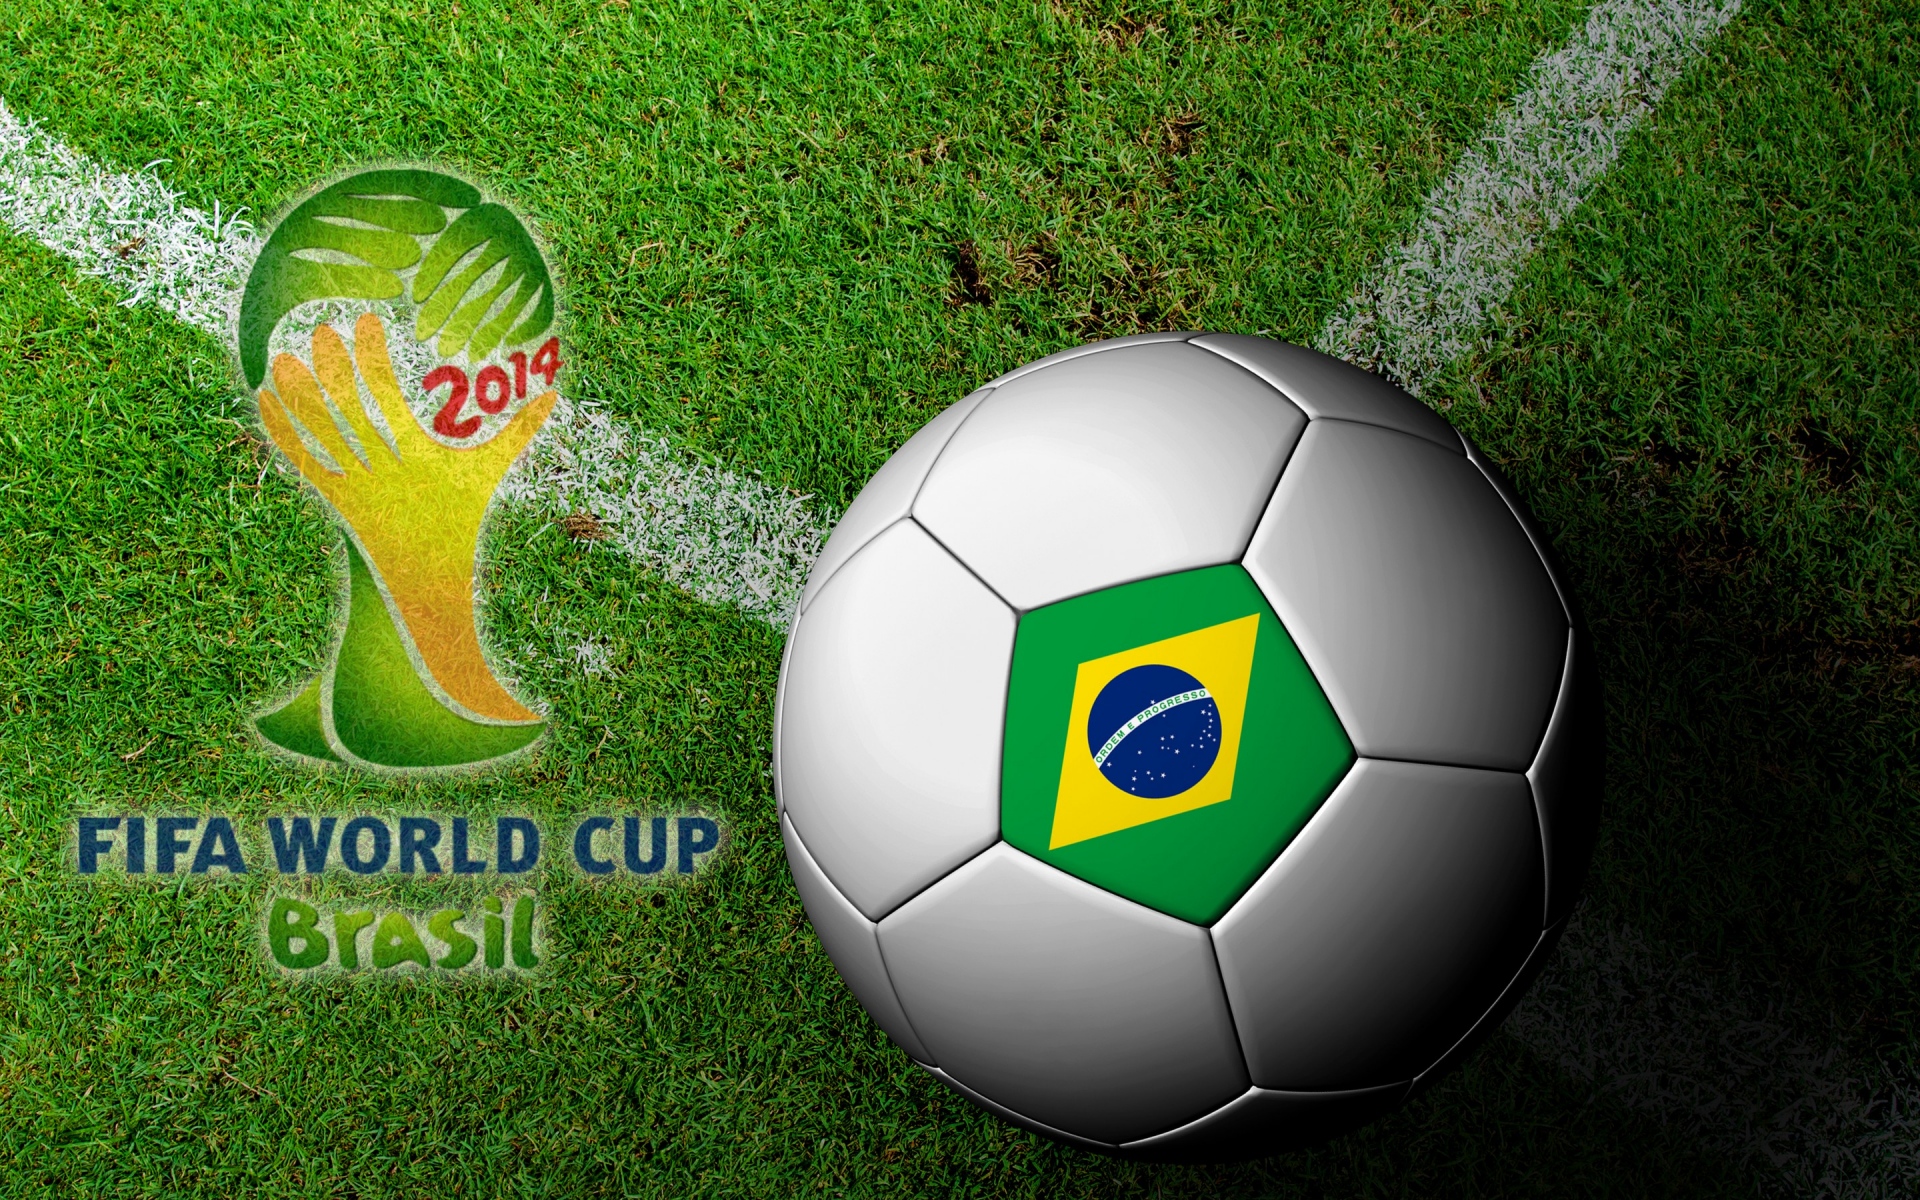 Картинки Бразильской, фифа, Кубок мира, 2014, футбол, мяч фото и обои на рабочий стол